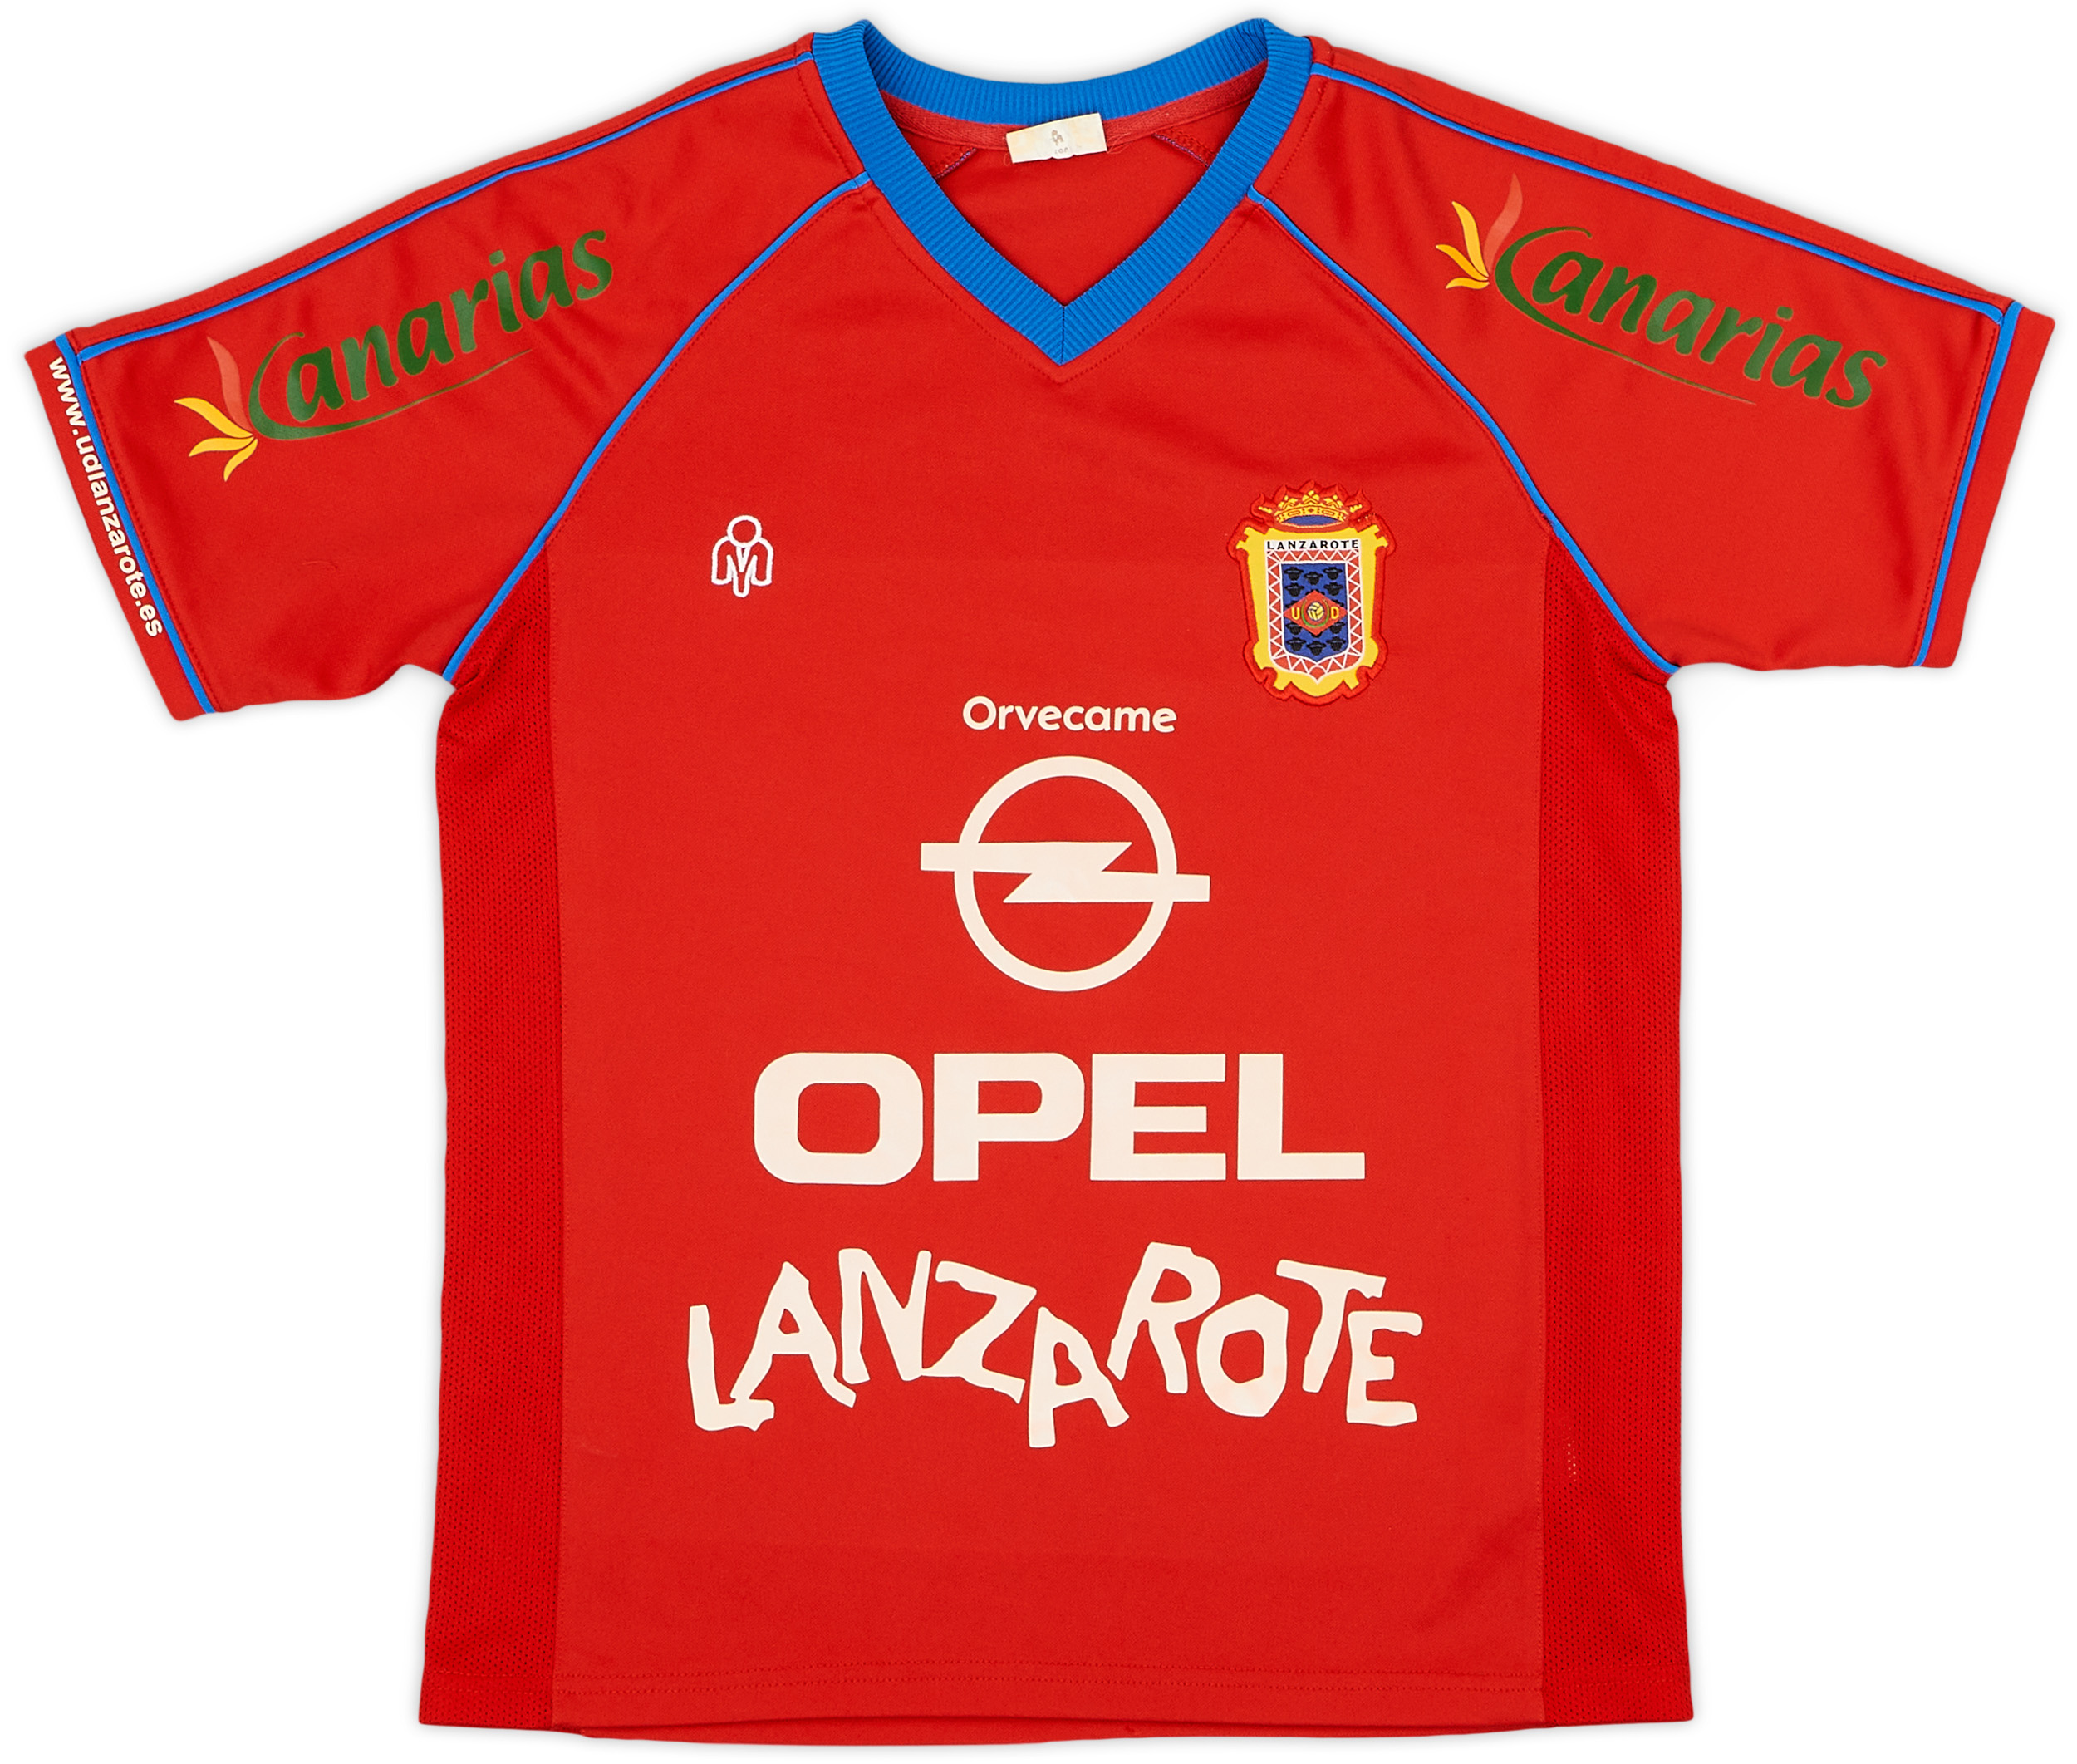 2005-06 Lanzarote Home Shirt - 8/10 - ()